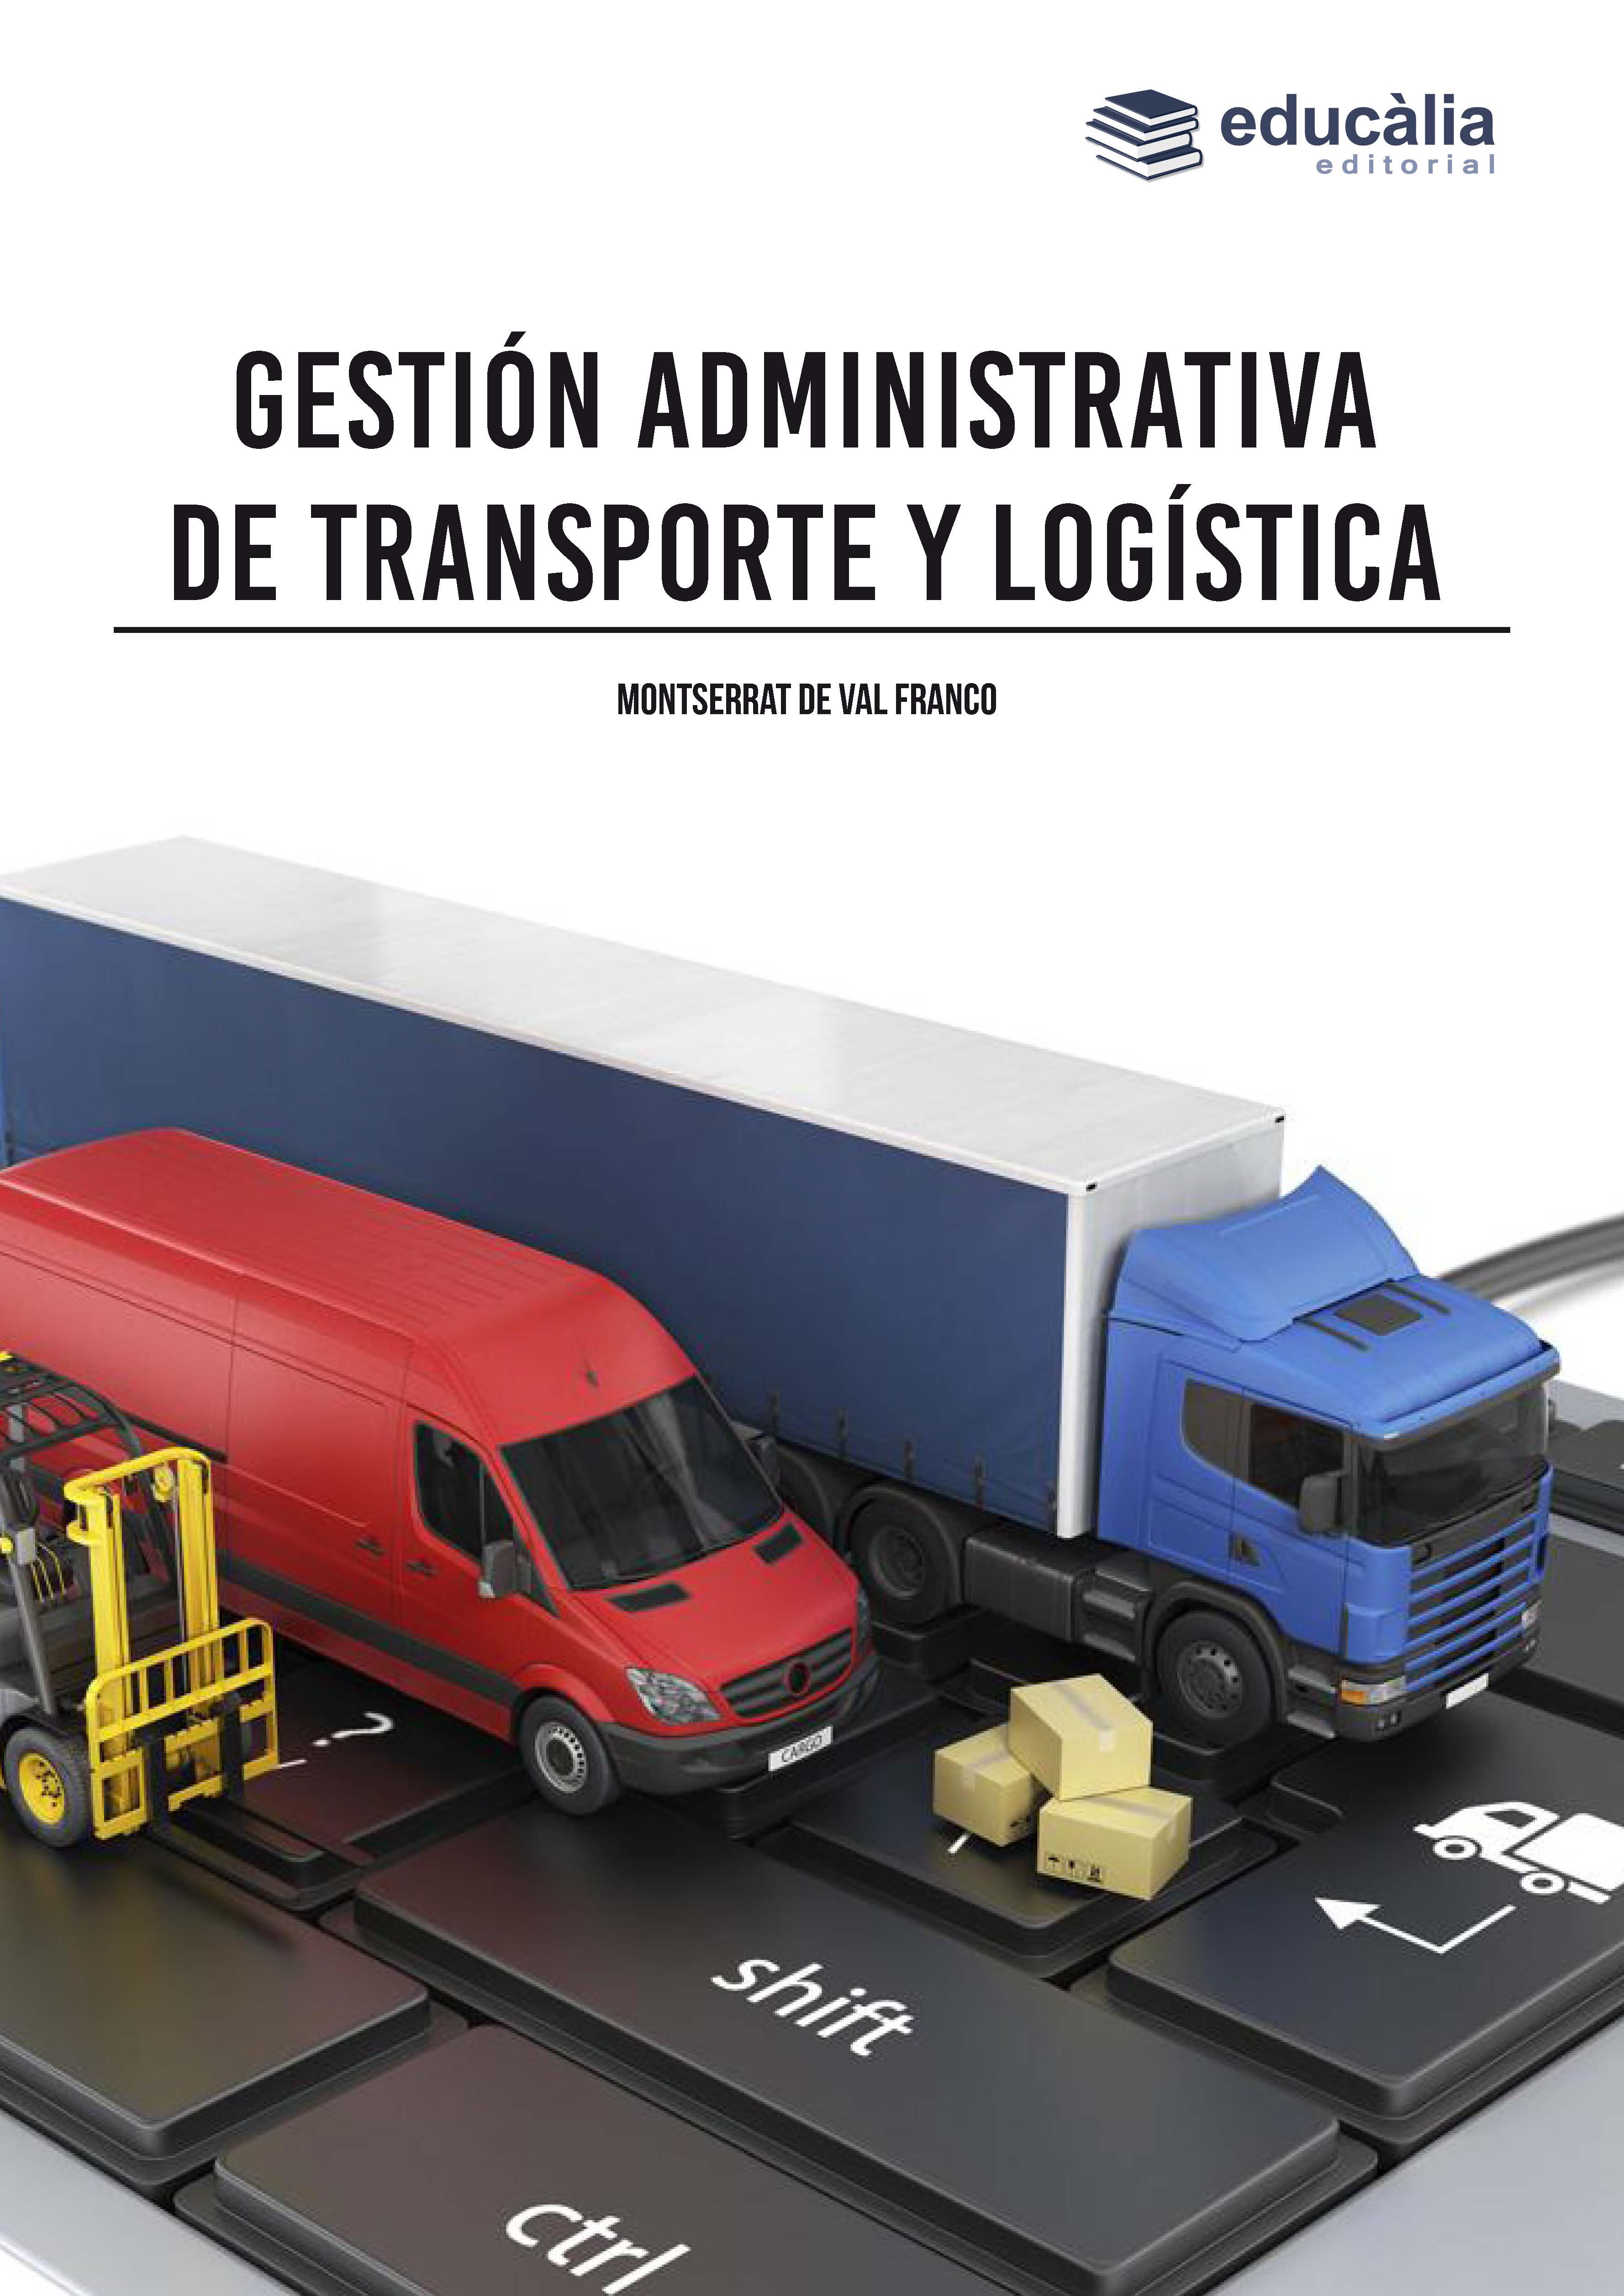 Gestión administrativa de transporte y logística